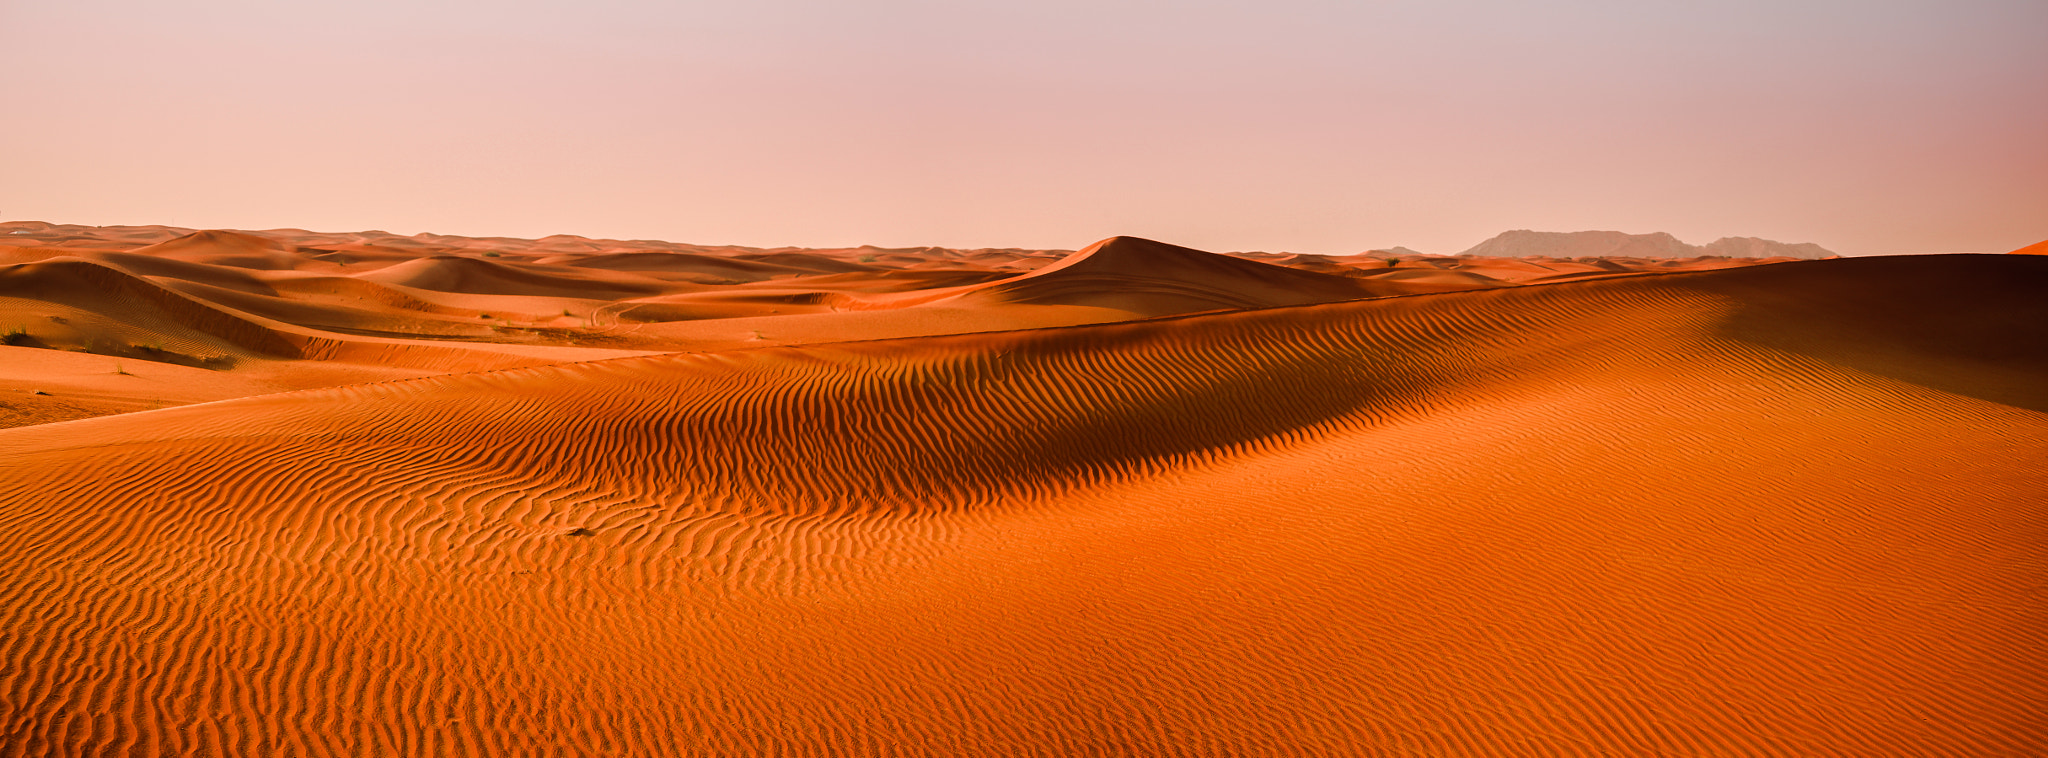 Canon EOS 5D Mark II sample photo. Dubai sand dunes photography